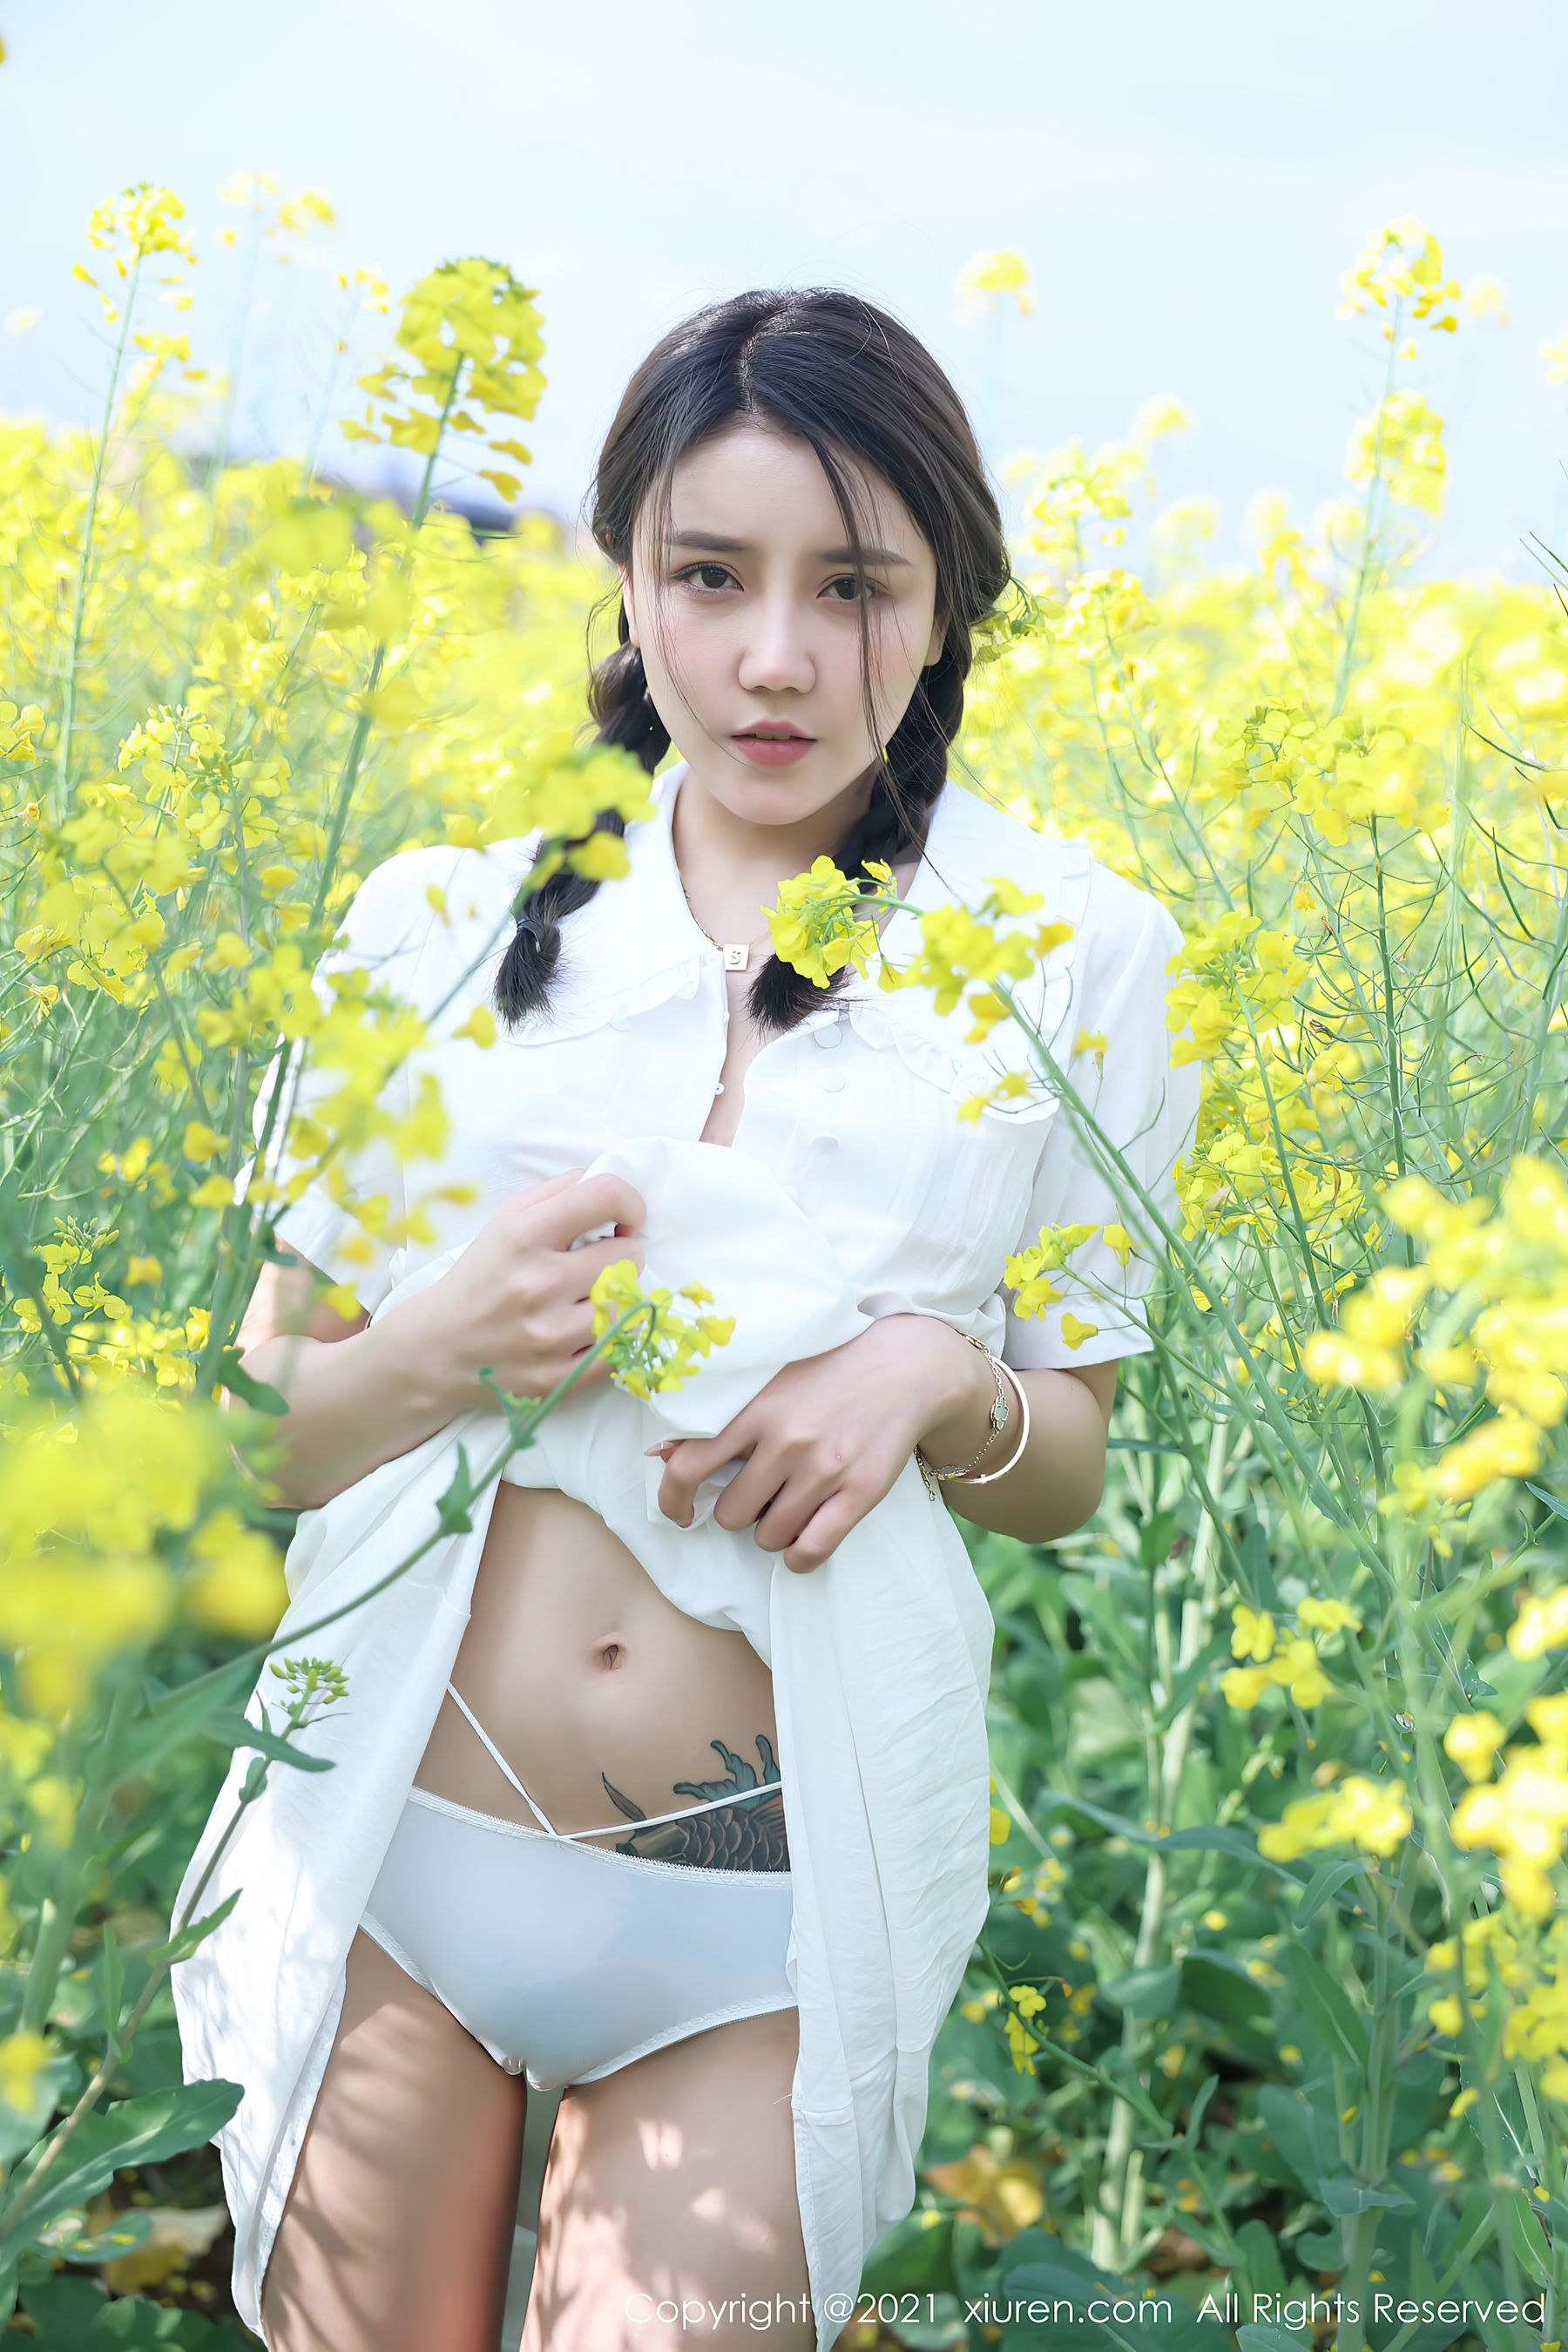 [人 xiuren] no.3276 summertic CICI – Outdoor flowers 3